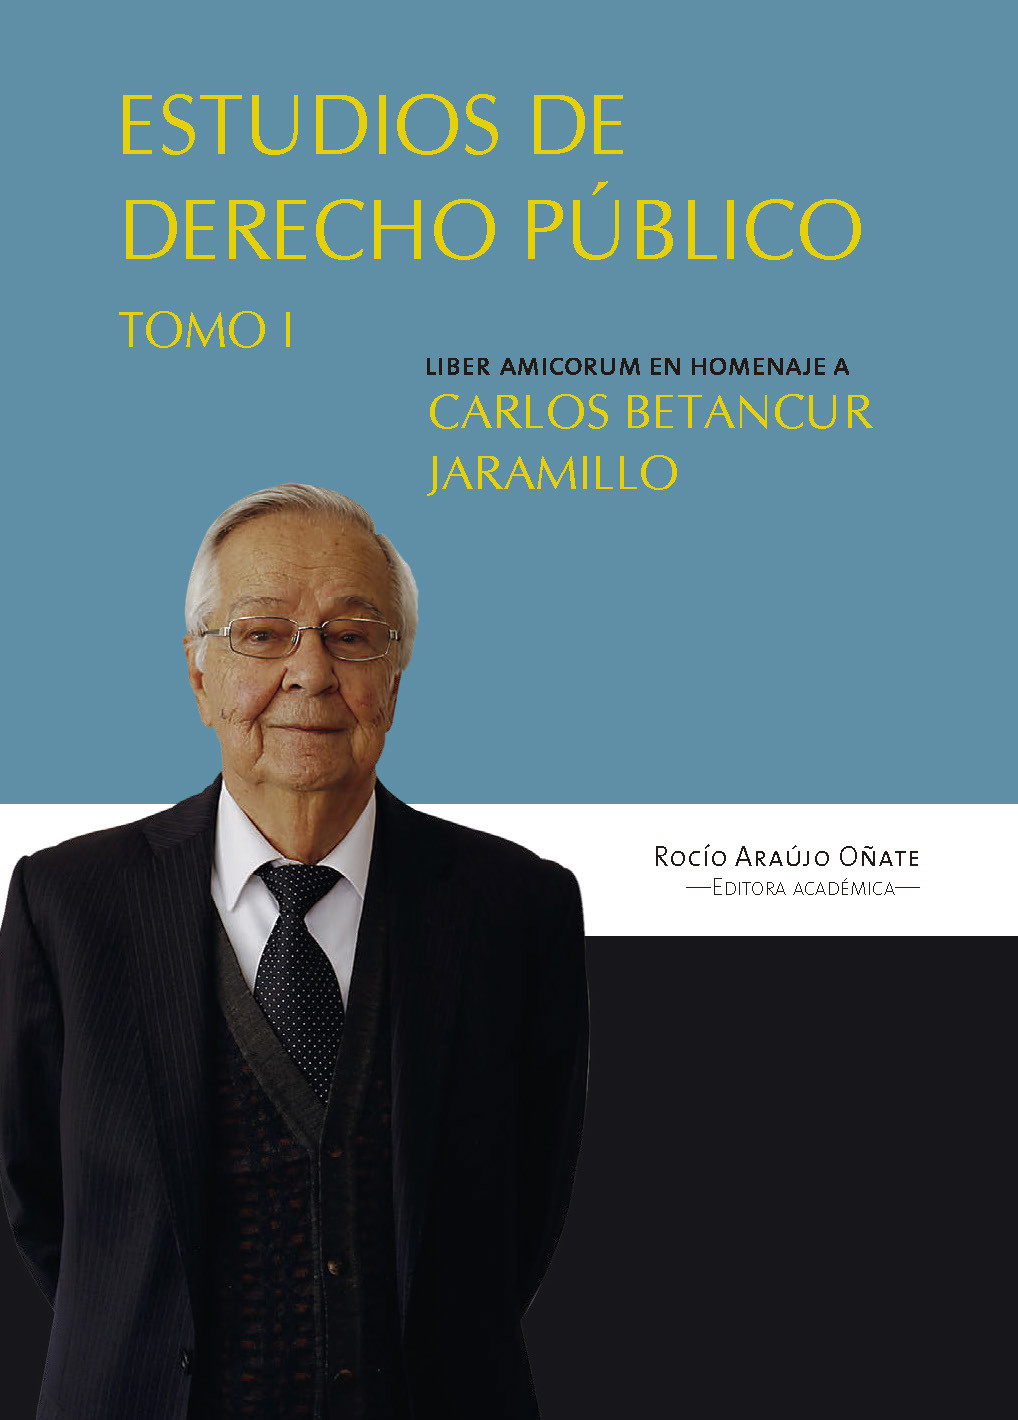 Imagen de portada del libro Estudios en derecho público